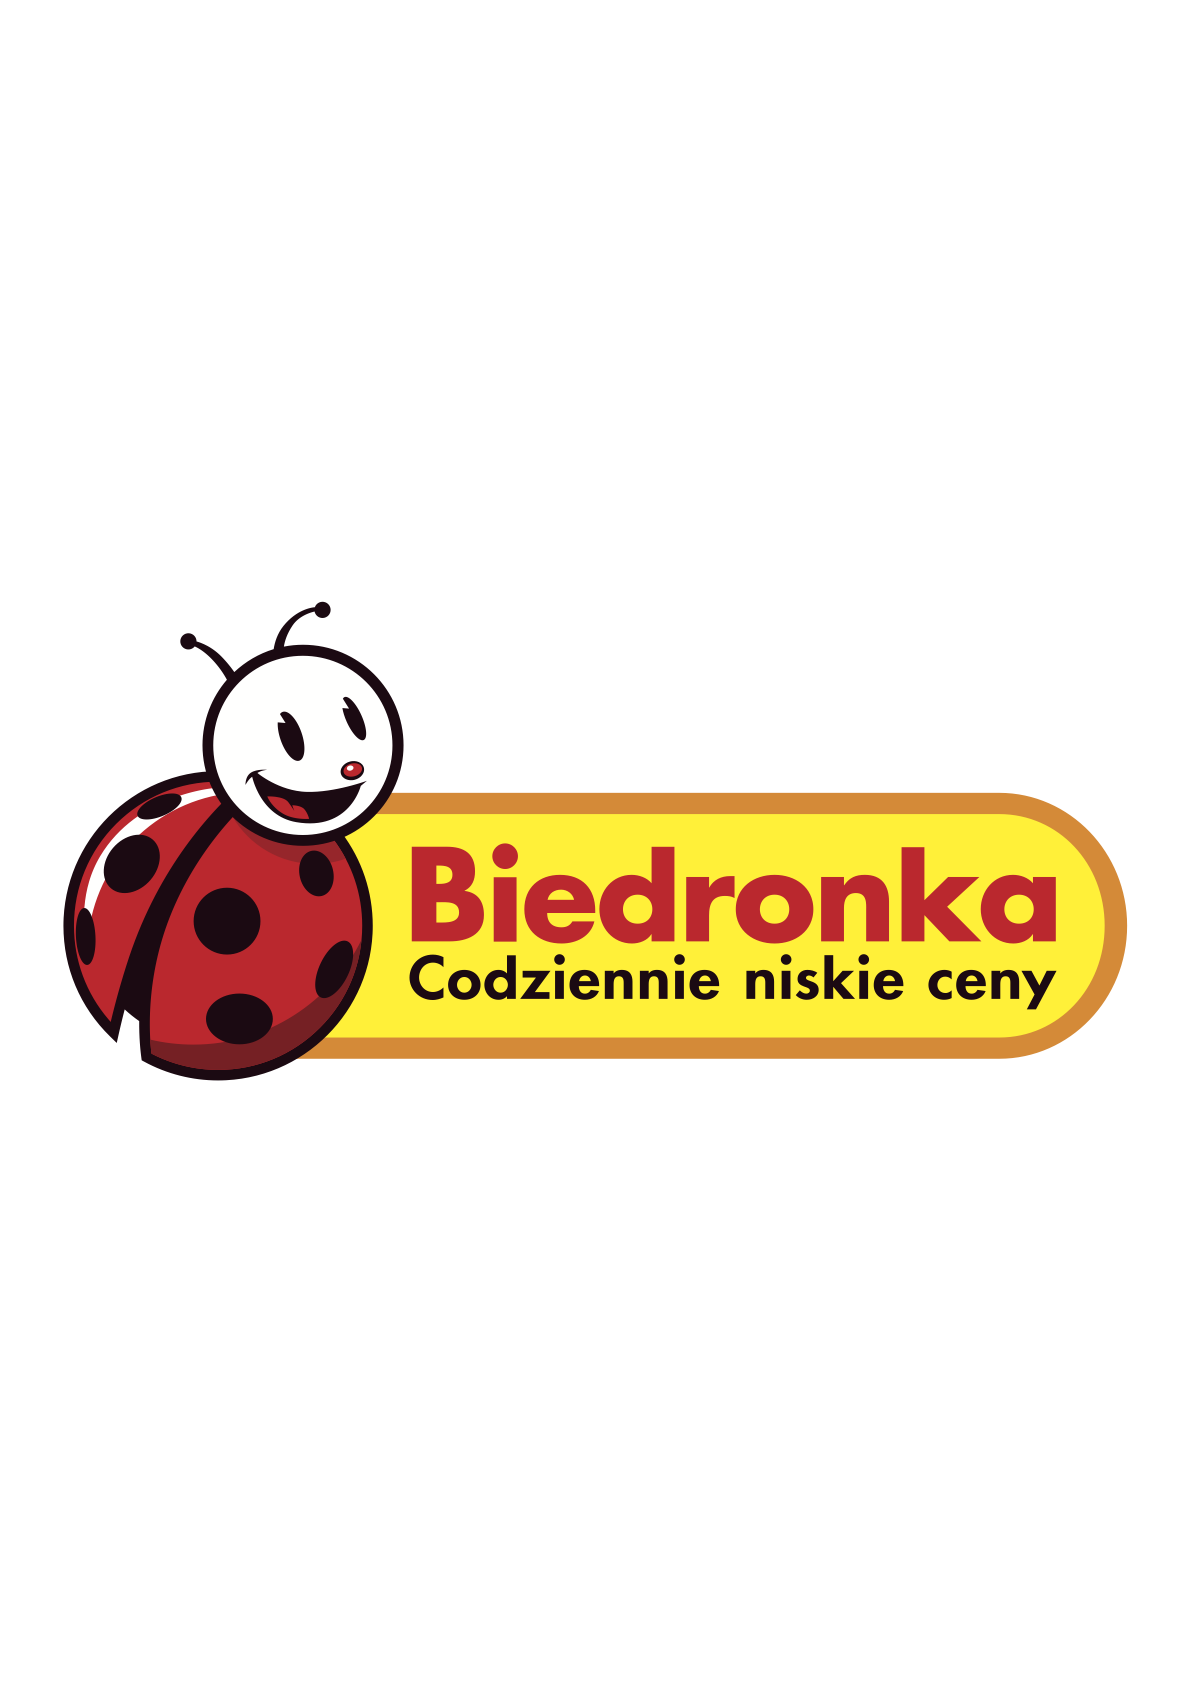 Jeronimo Martins Polska właściciel sklepów Biedronka 